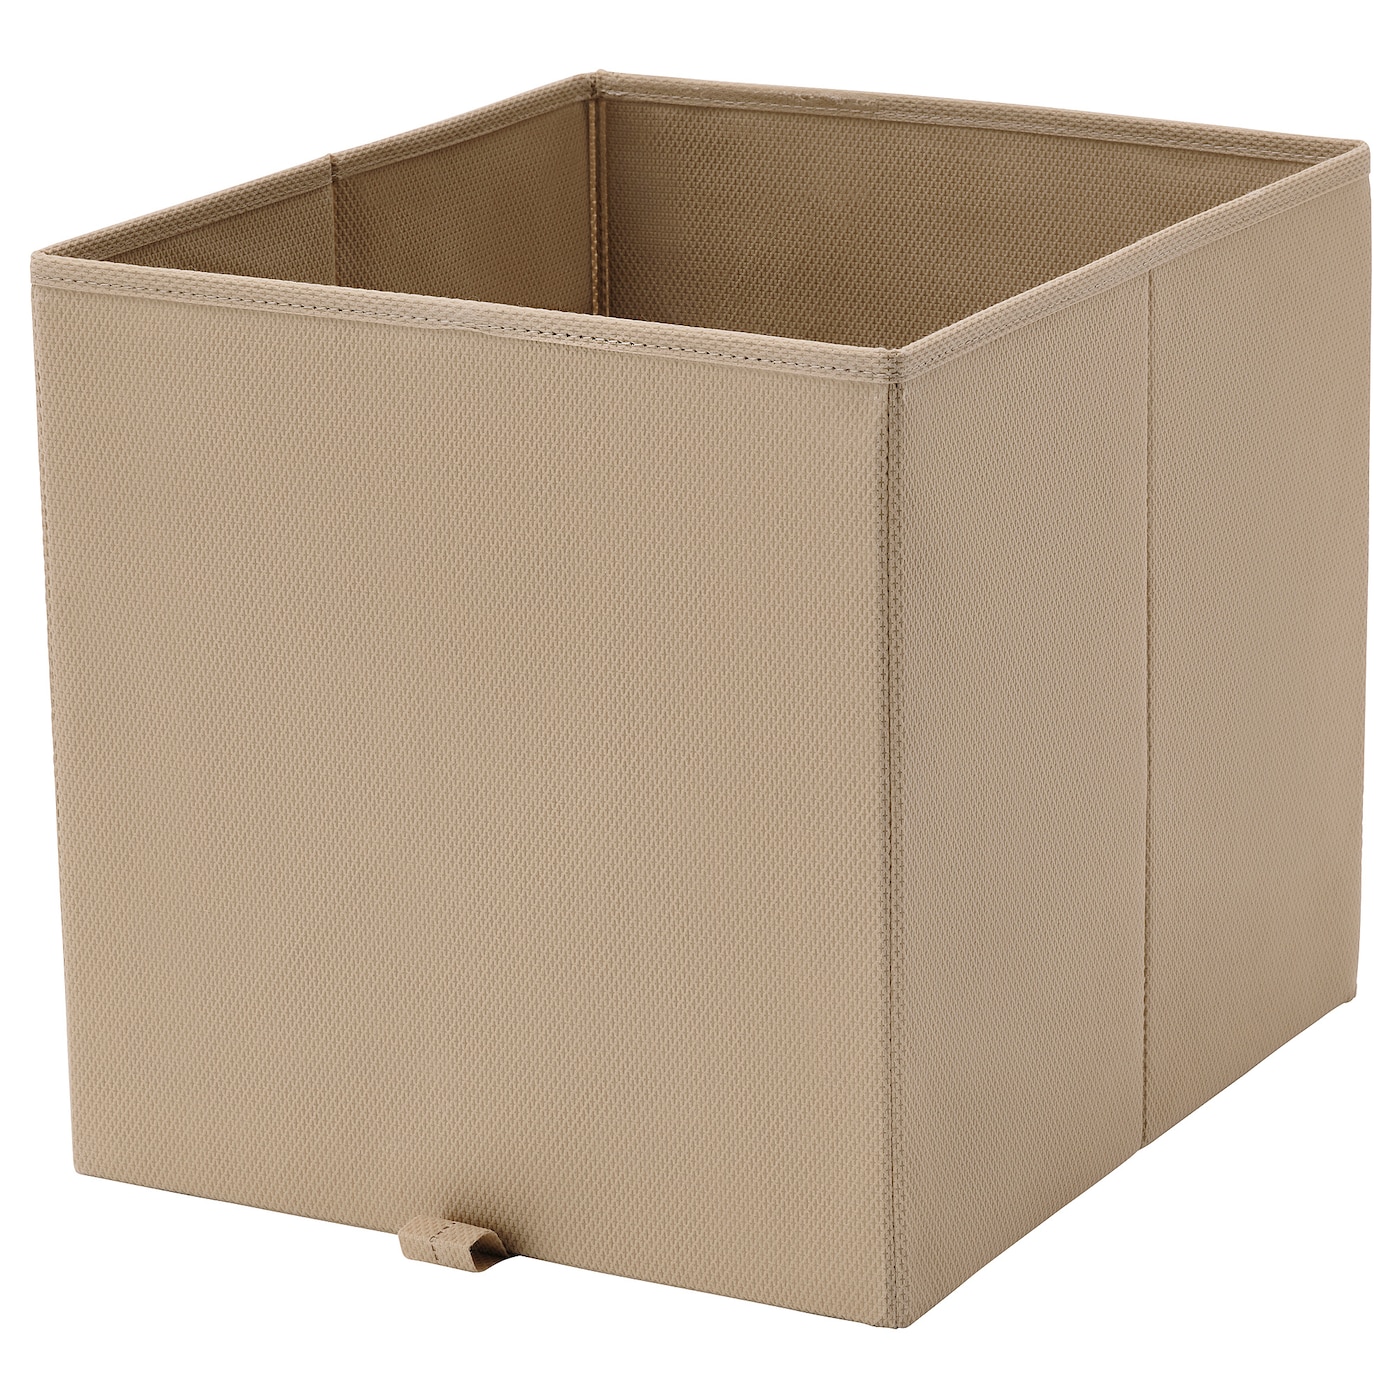 Коробка - KOSINGEN IKEA/ КОСИНГЕН ИКЕА, 33x38x33 см, бежевый